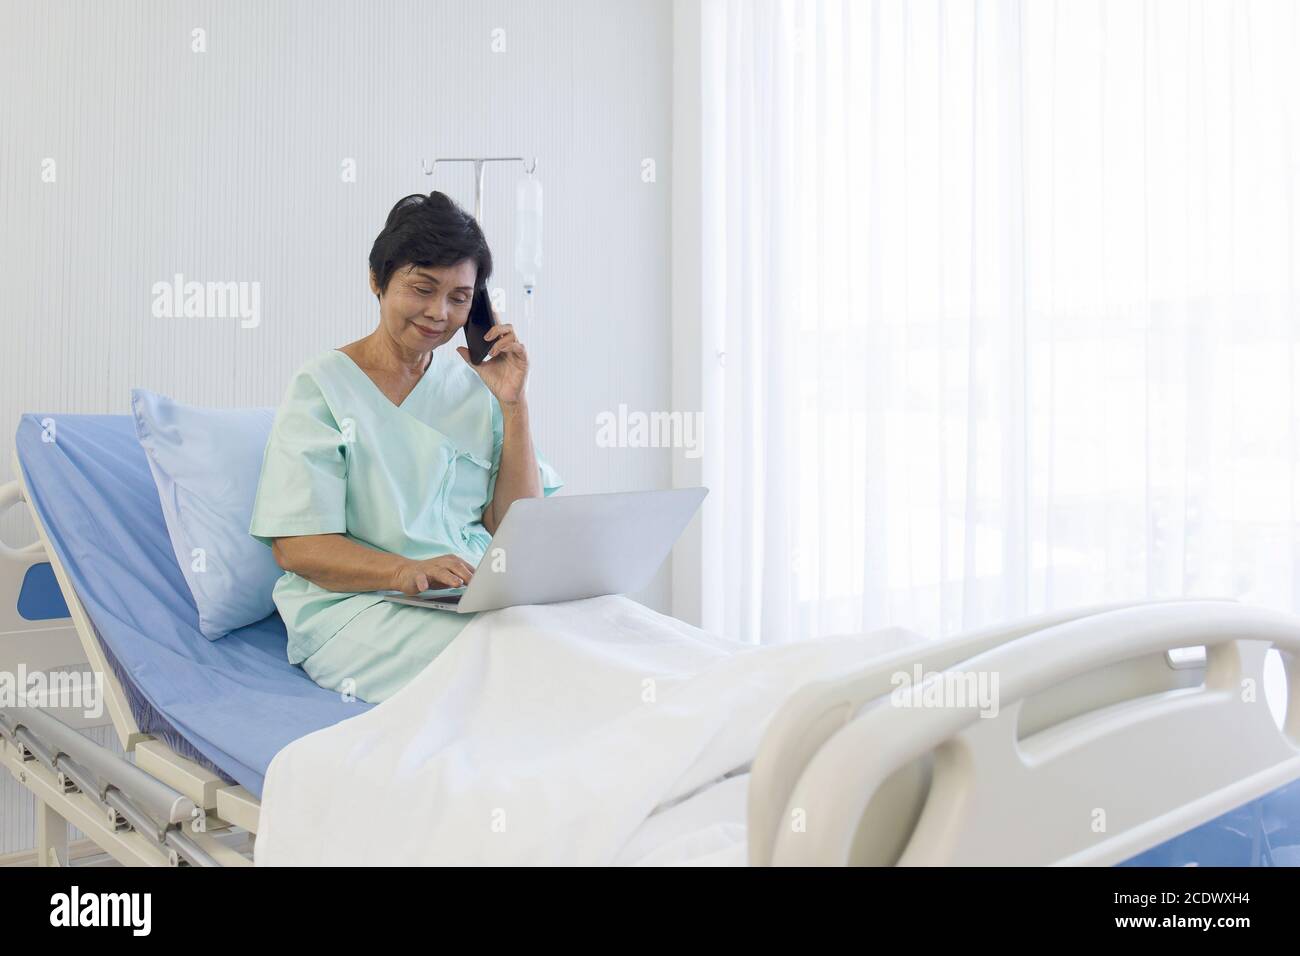 Le donne asiatiche anziane si siedono a letto, si riprendono, parlano al telefono, e fanno commissioni su computer portatili, negli ospedali, camere speciali. Foto Stock